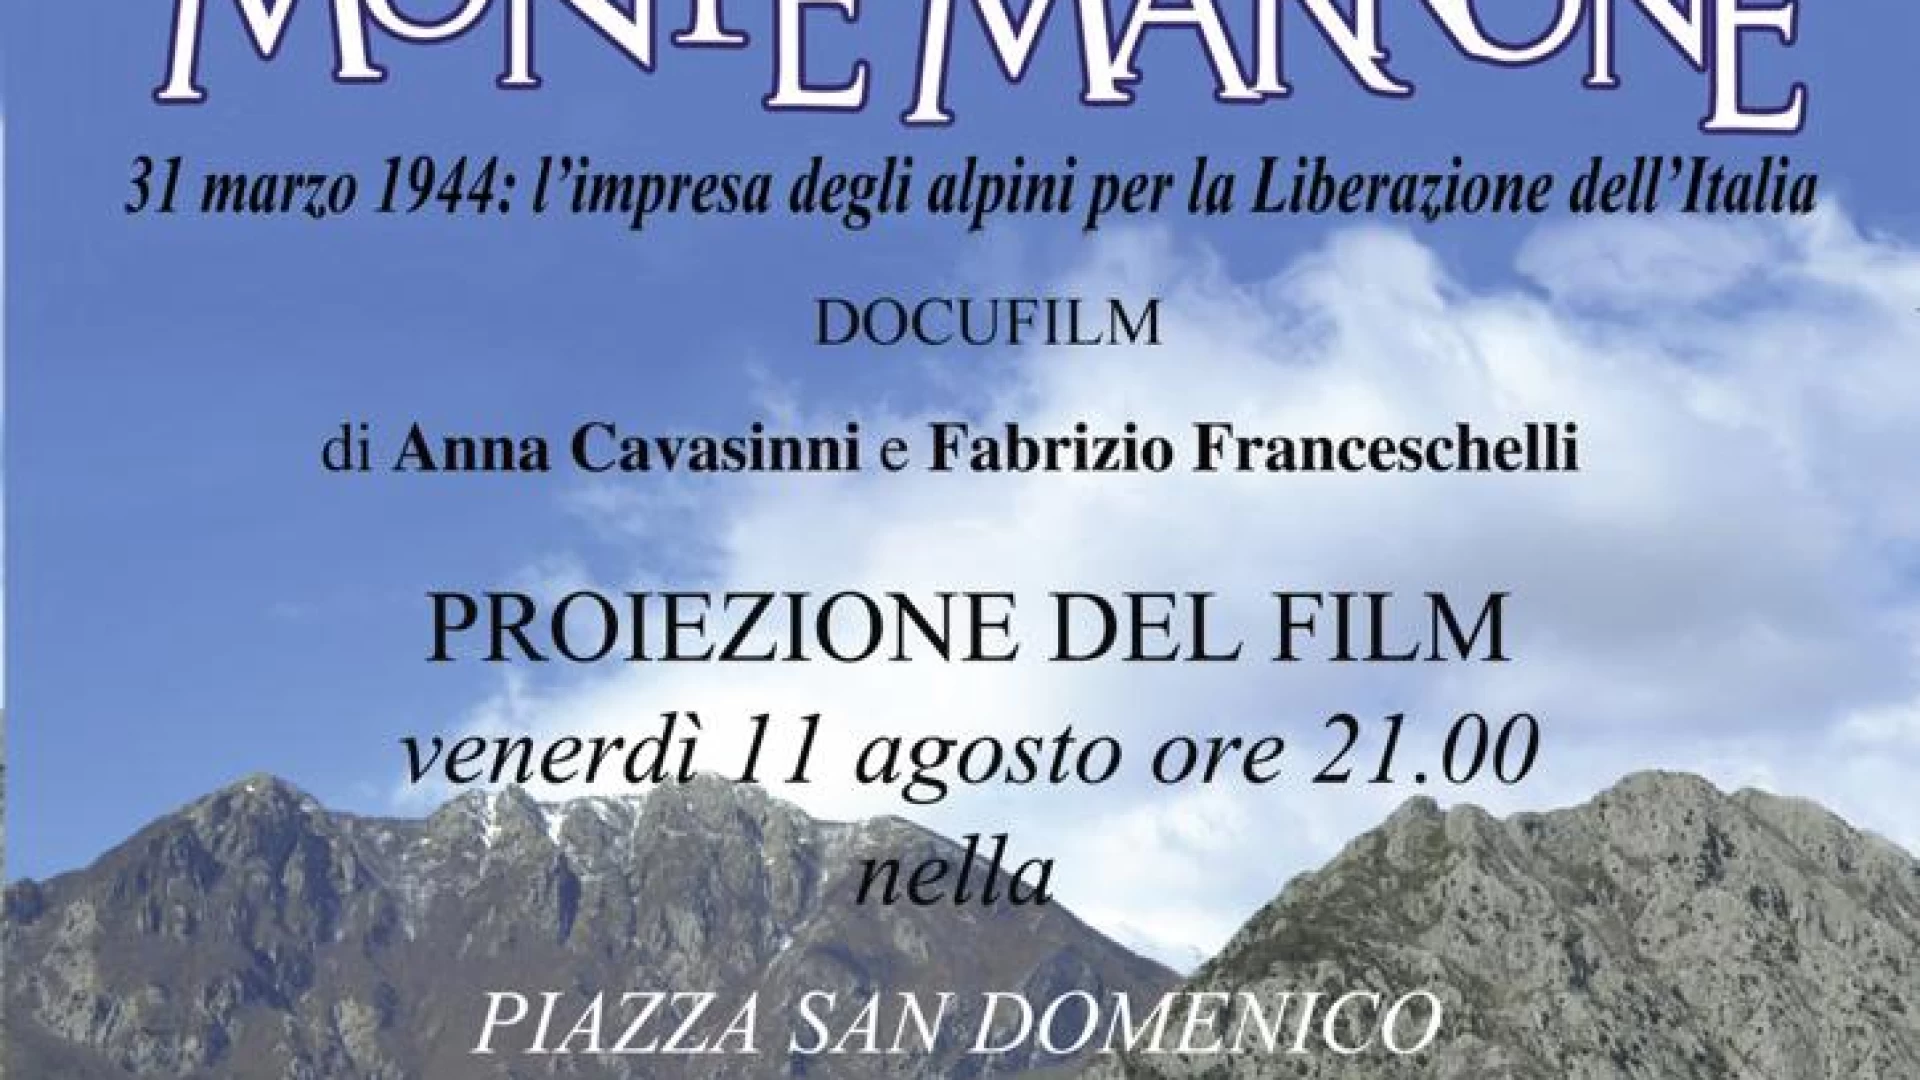 Rocchetta a Volturno: in Piazza San Domenico la proiezione del film "La Vittoria di Monte Marrone".